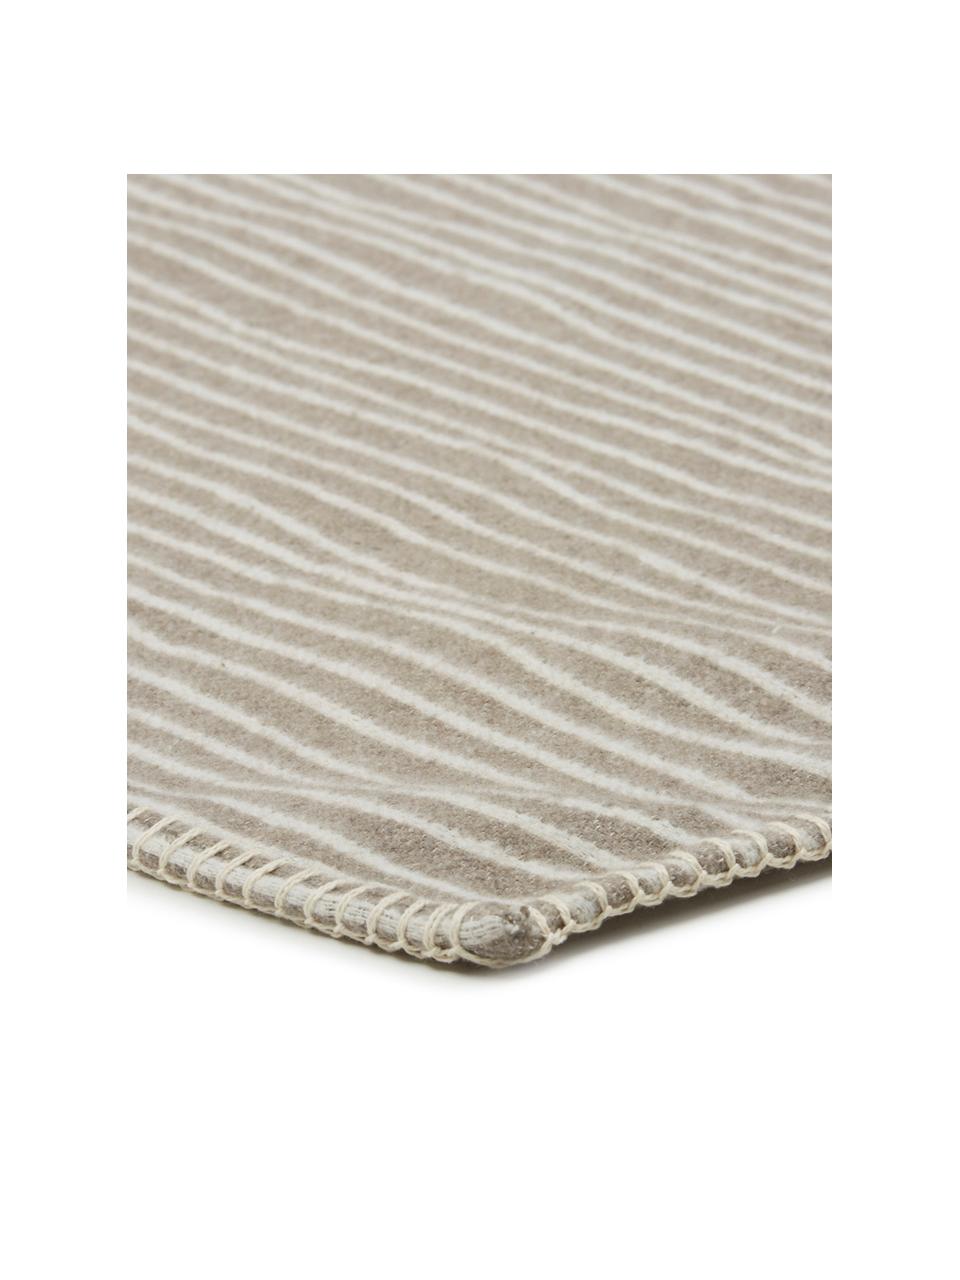 Kuscheldecke Nova Stripes im Liniendesign, 85% Baumwolle, 8% Viskose, 7% Polyacryl, Rauchgrau, Weiß, 145 x 220 cm